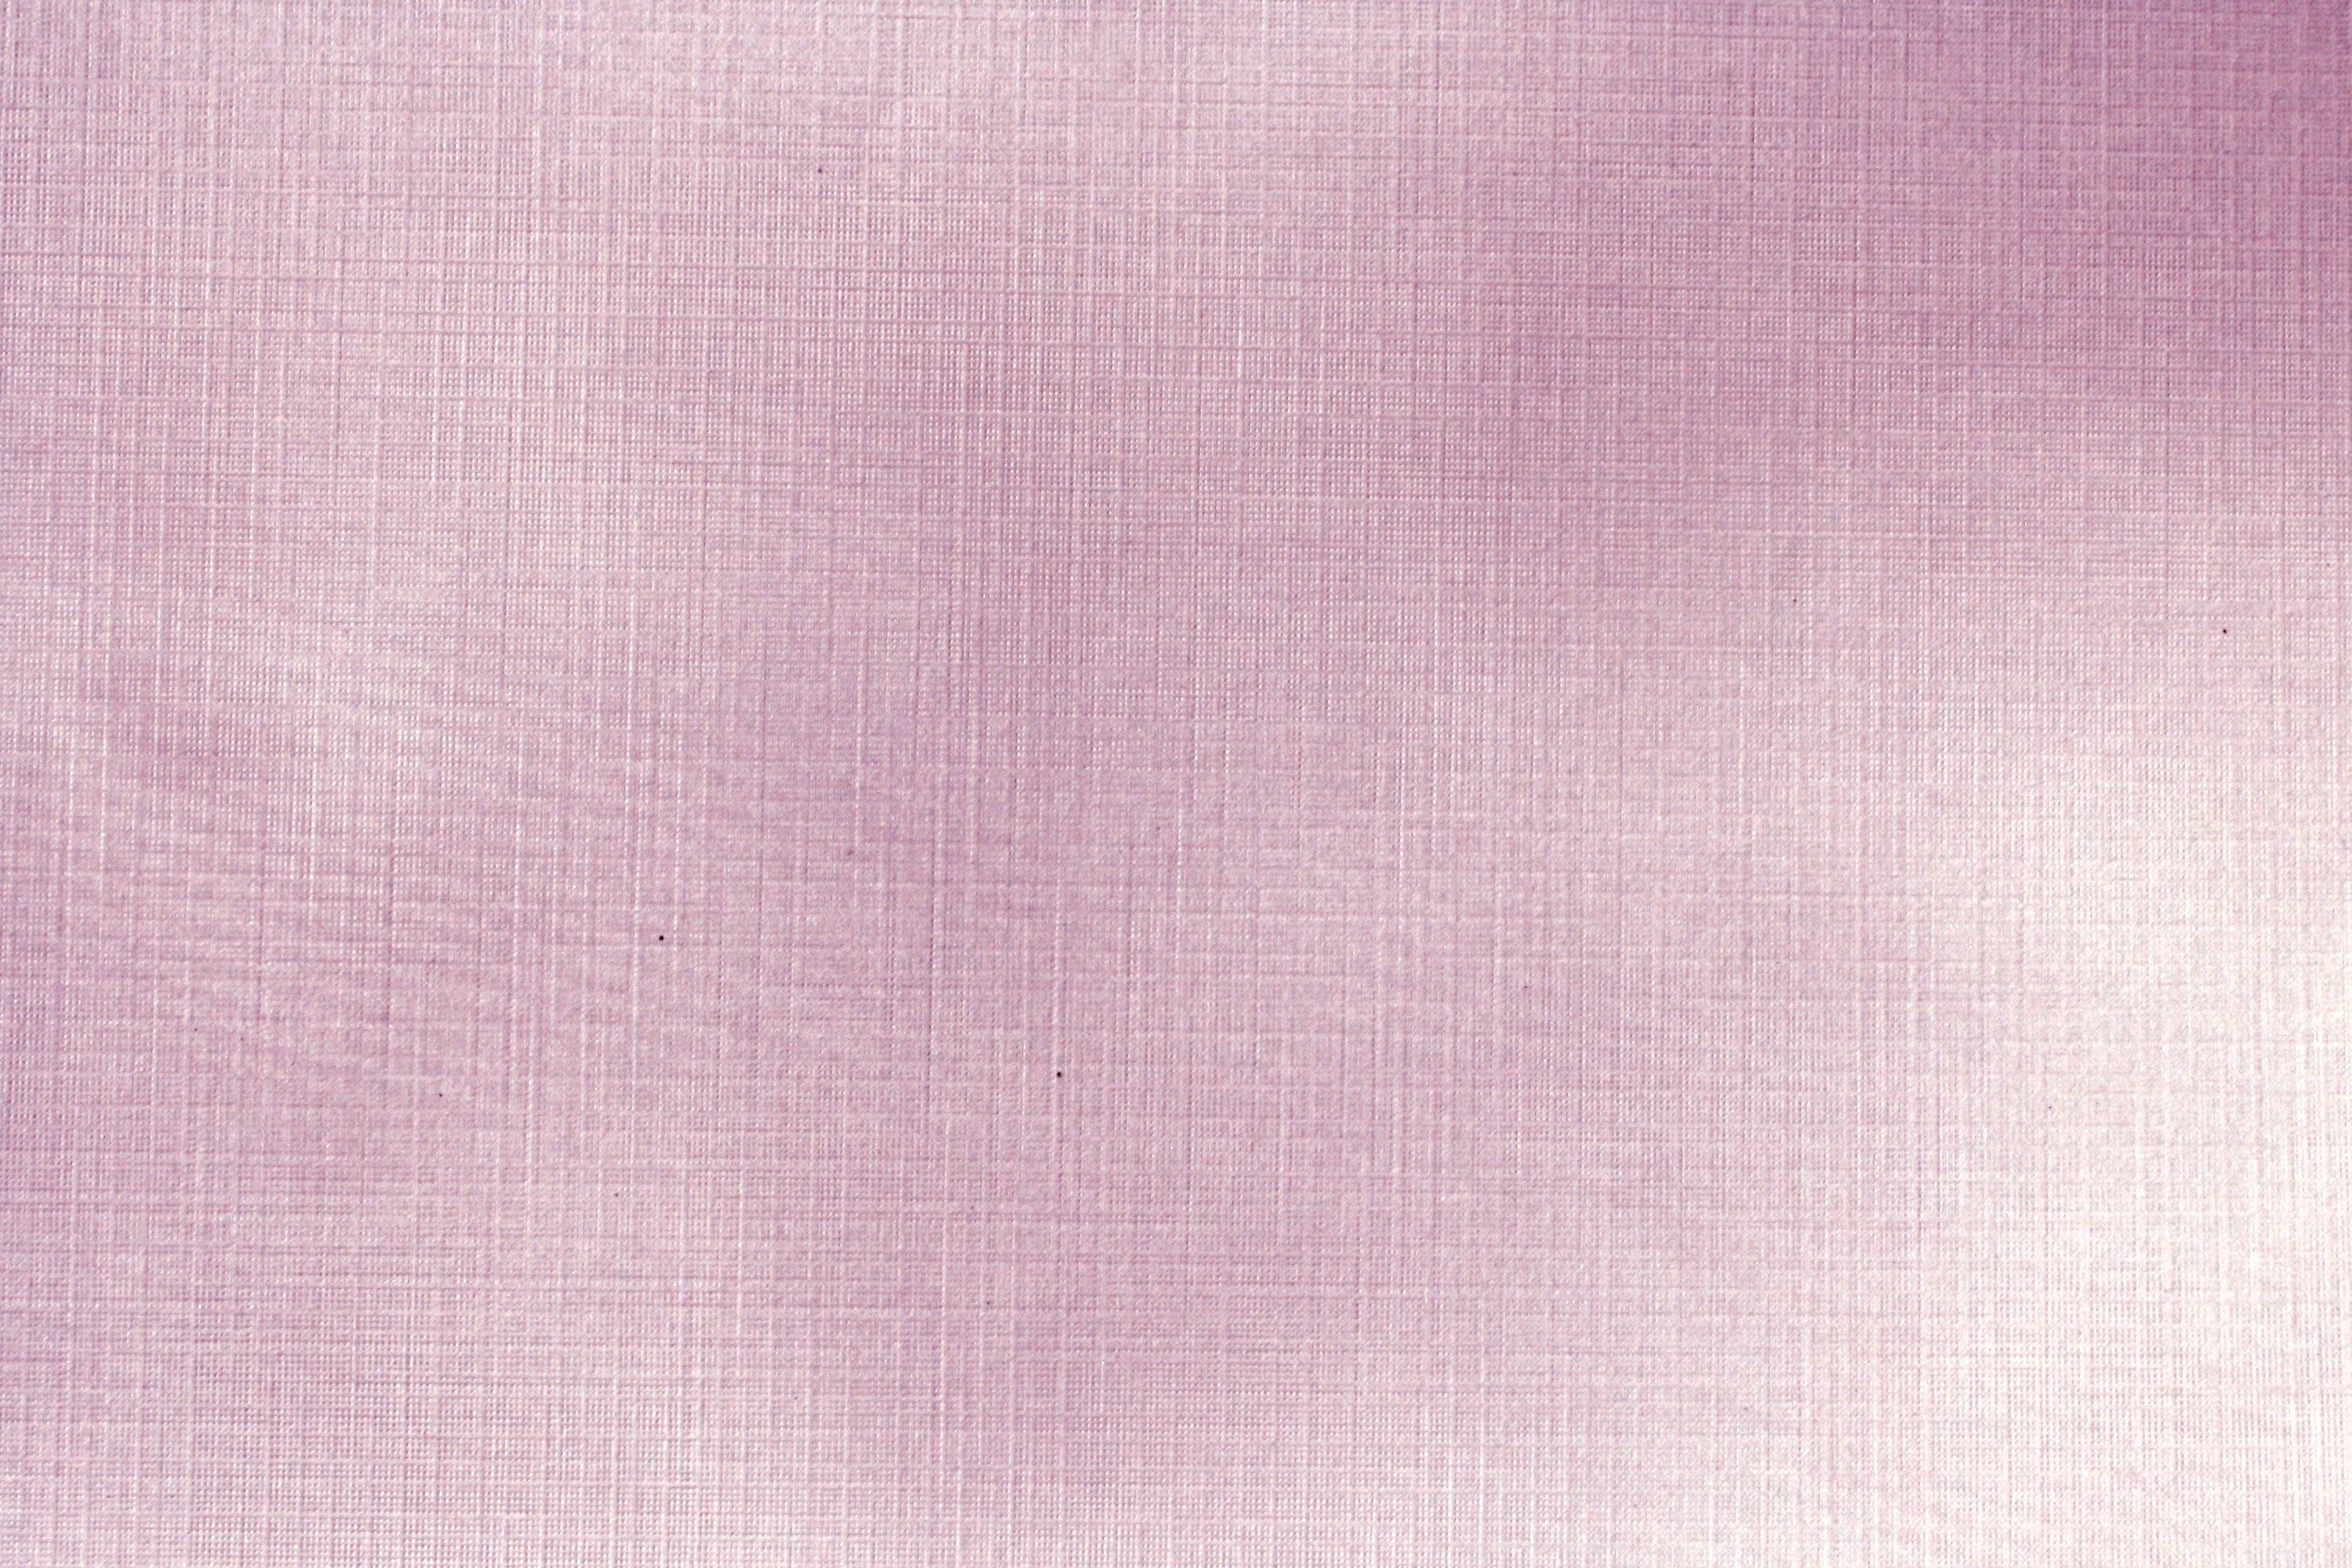 Mauve Linen Paper Texture Picture. Free Photograph. Photo